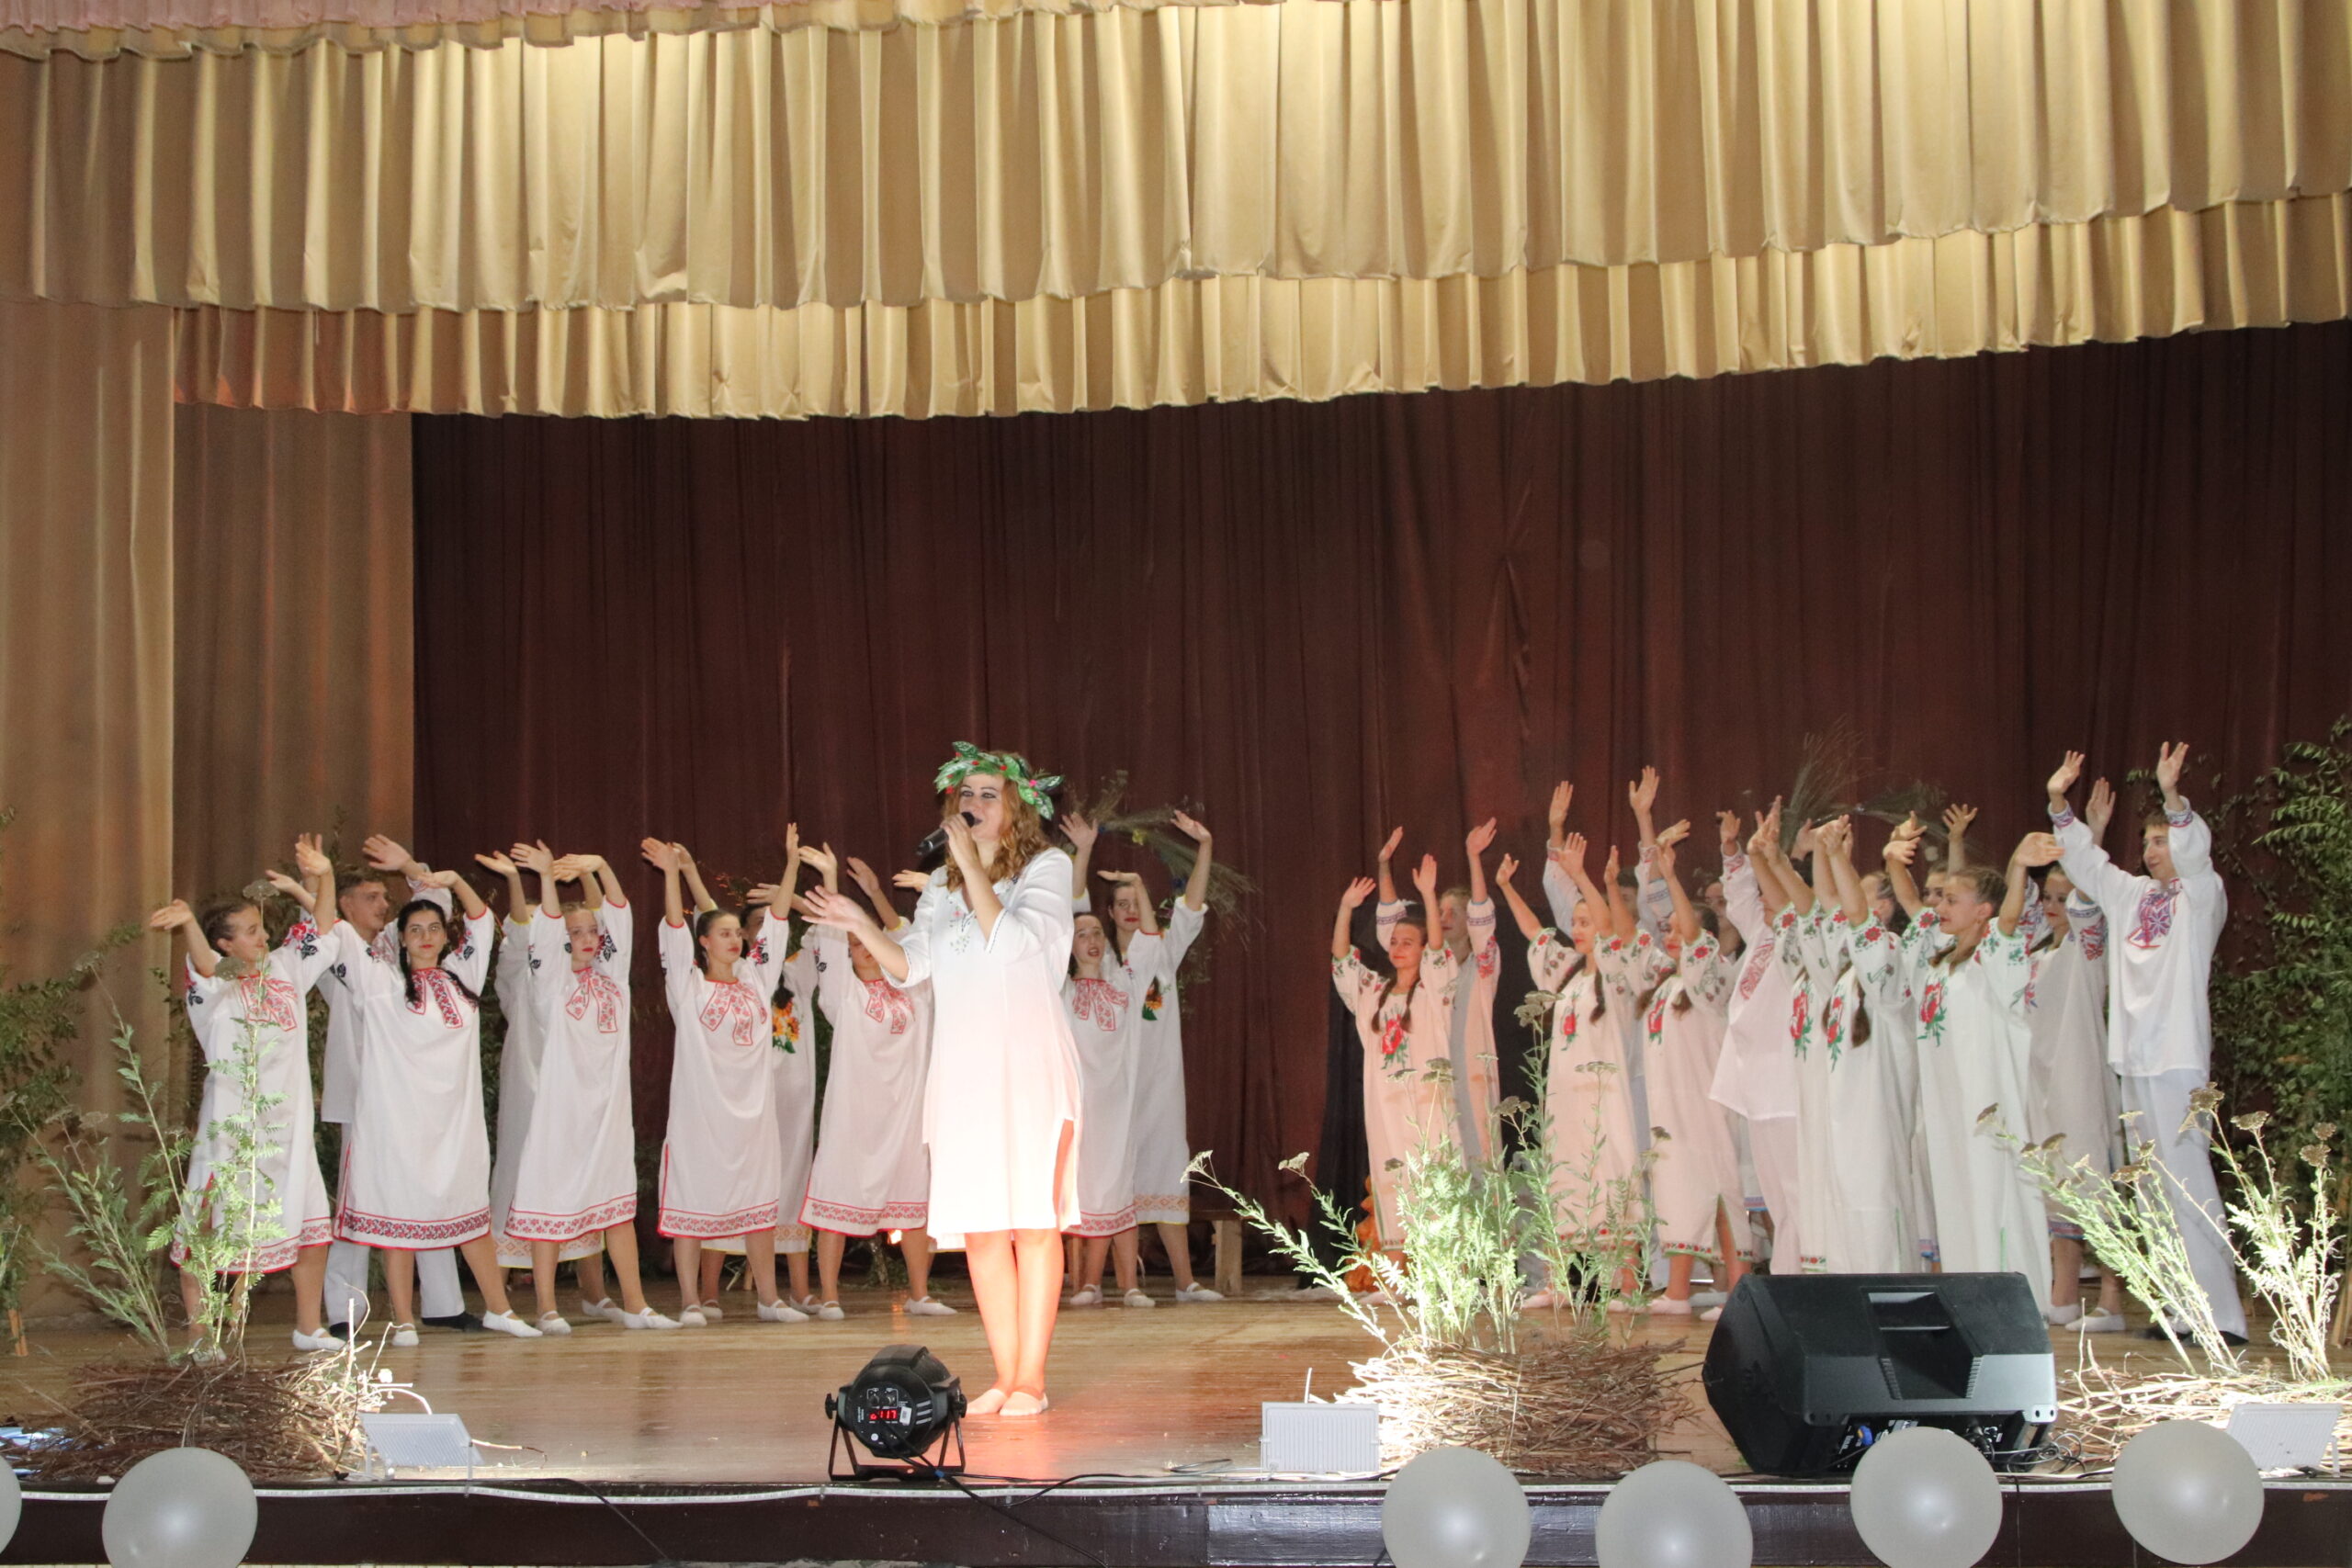 Ярко и эмоционально: в Болградской общине завершился театральный сезон, посвященный ВСУ